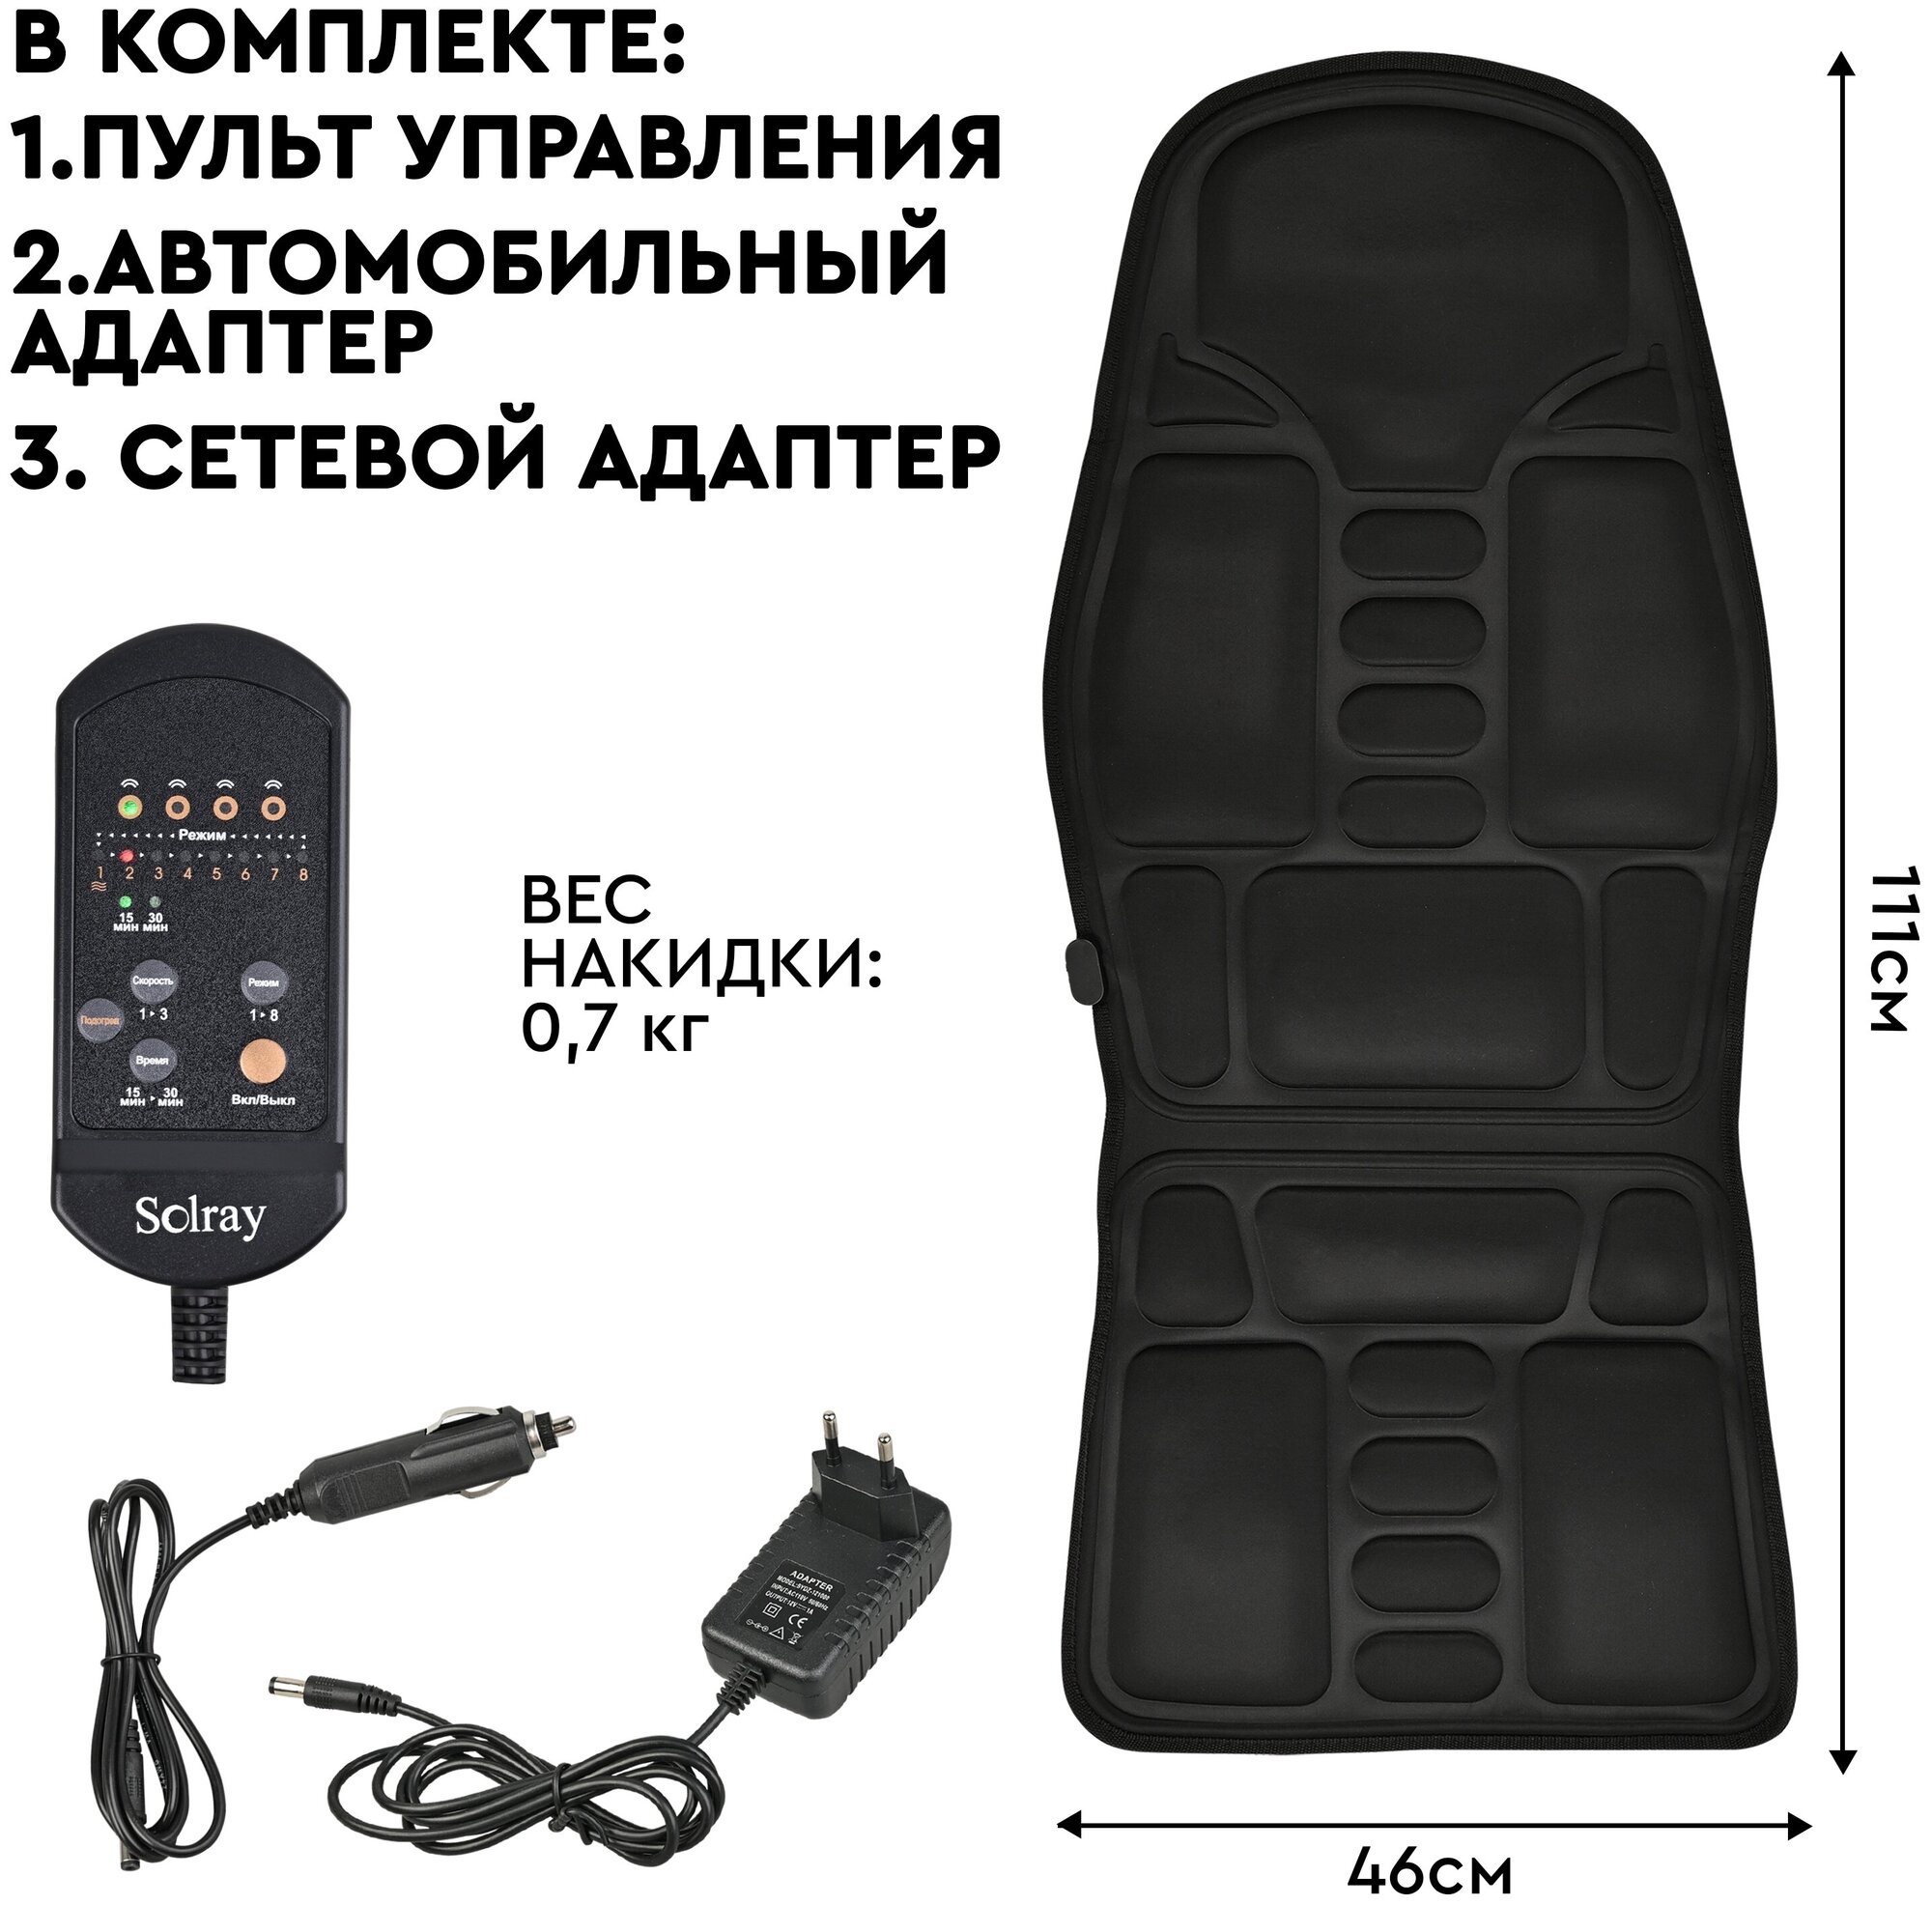 SOLRAY Многофункциональная массажная накидка с подогревом SMN-100 для дома и автомобиля